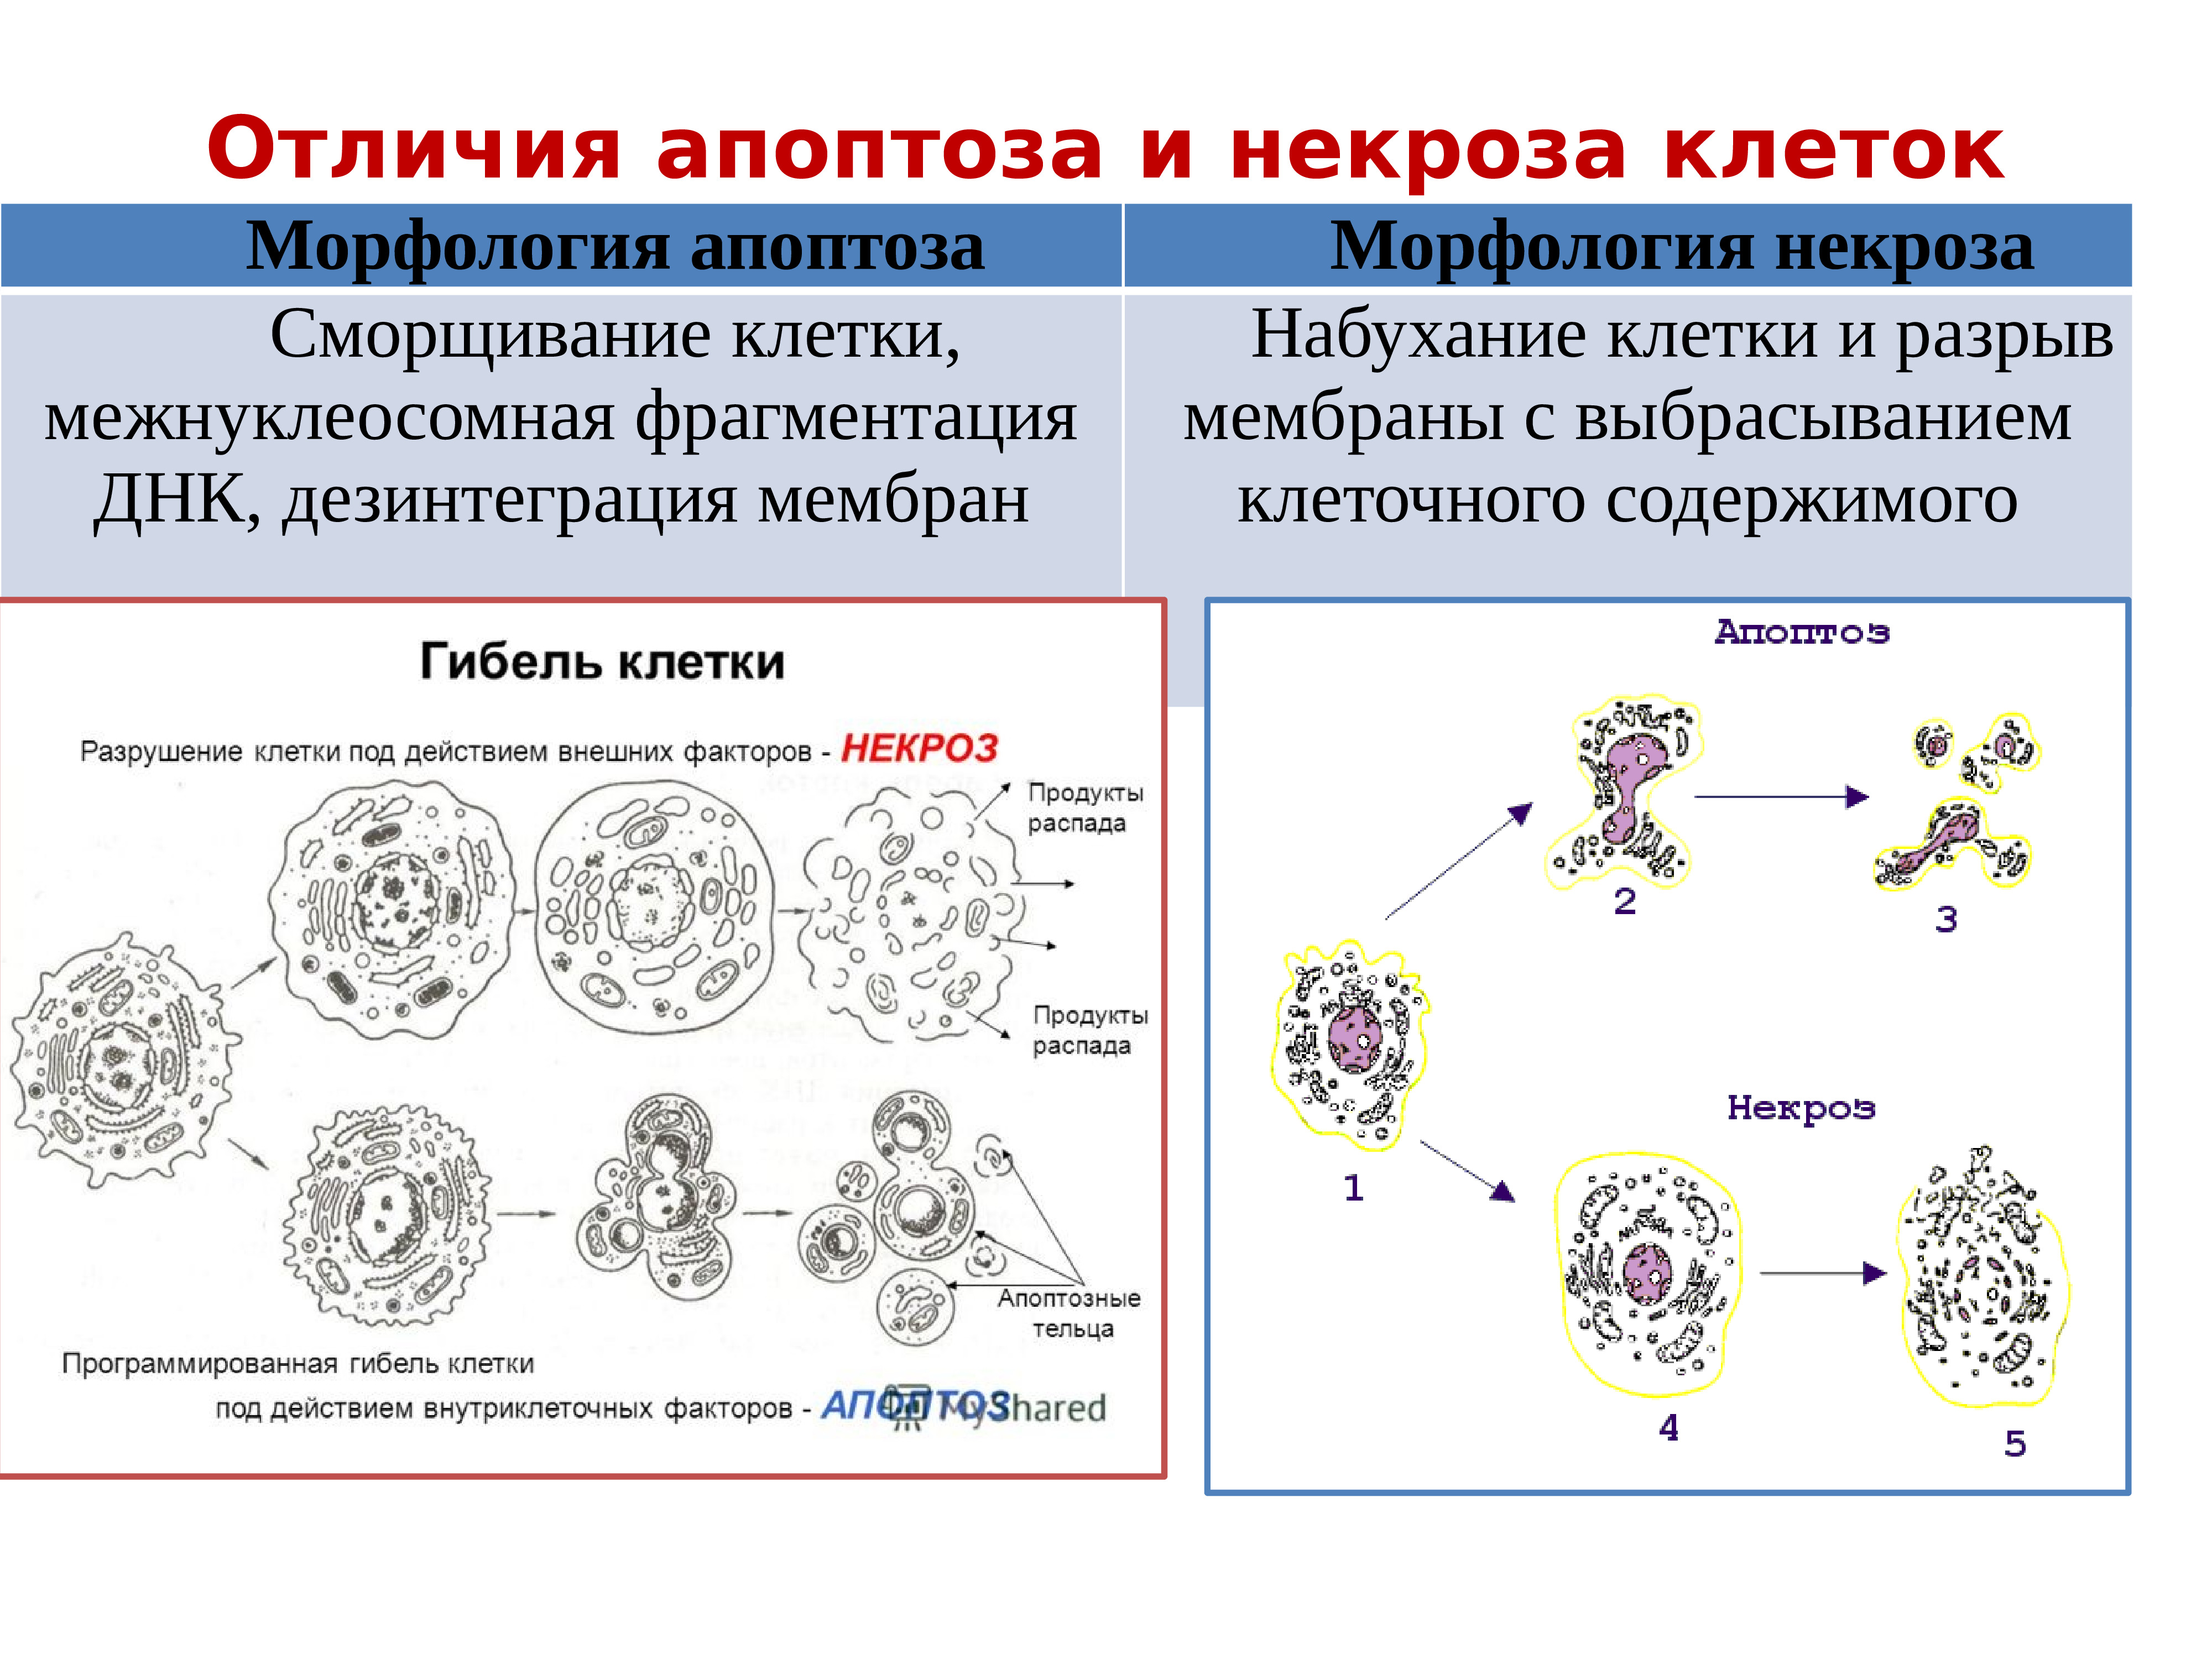 Морфологические изменения клеток. Схема апоптоза и некроза. Механизм развития некроза клетки. Механизмы гибели клеток апоптоз и некроз. Механизмы некроза клетки схема.